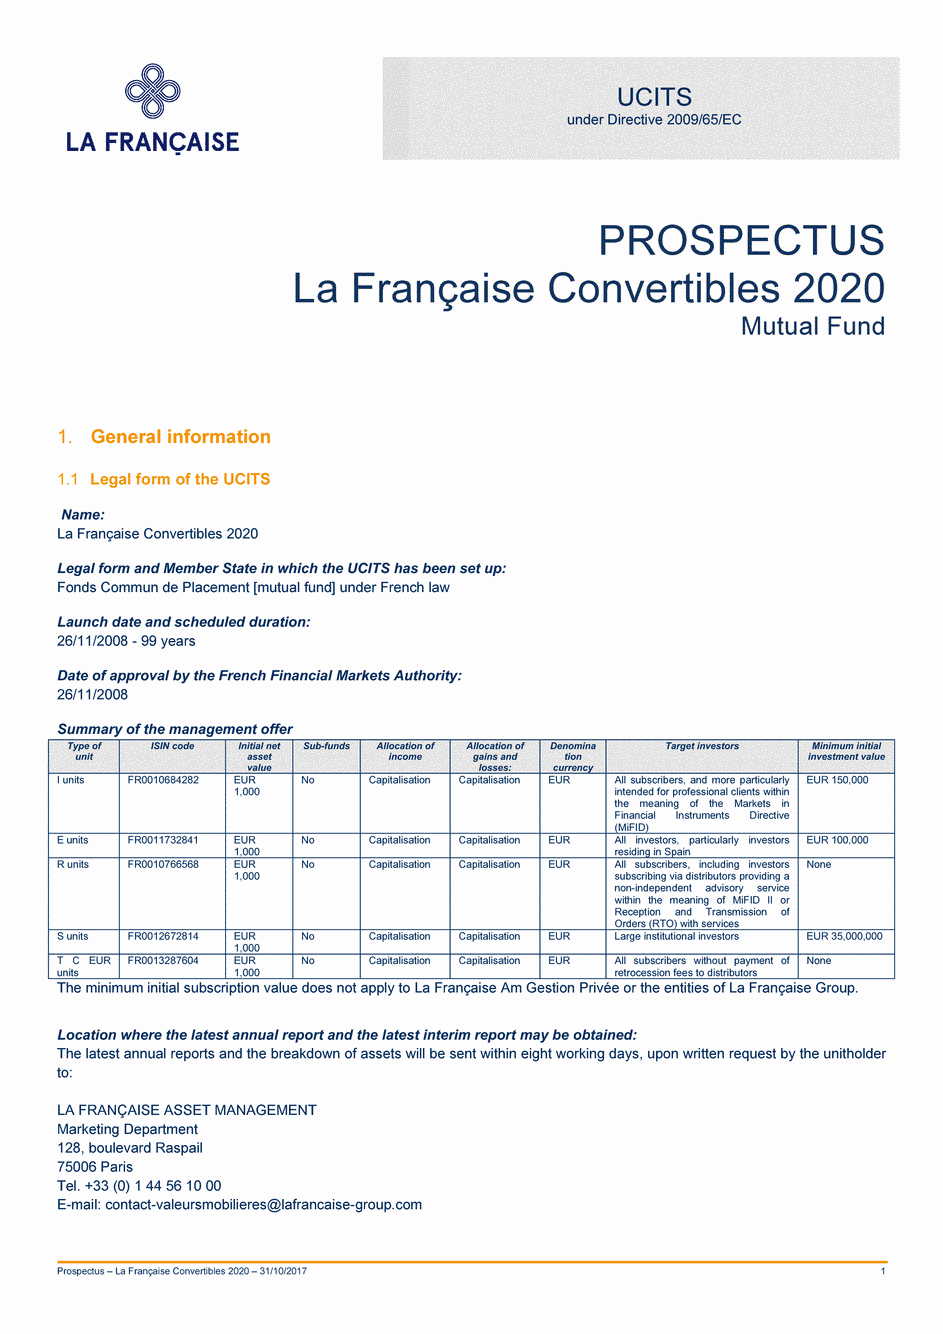 Prospectus La Française Convertibles 2020 - Part I - 31/10/2017 - Anglais